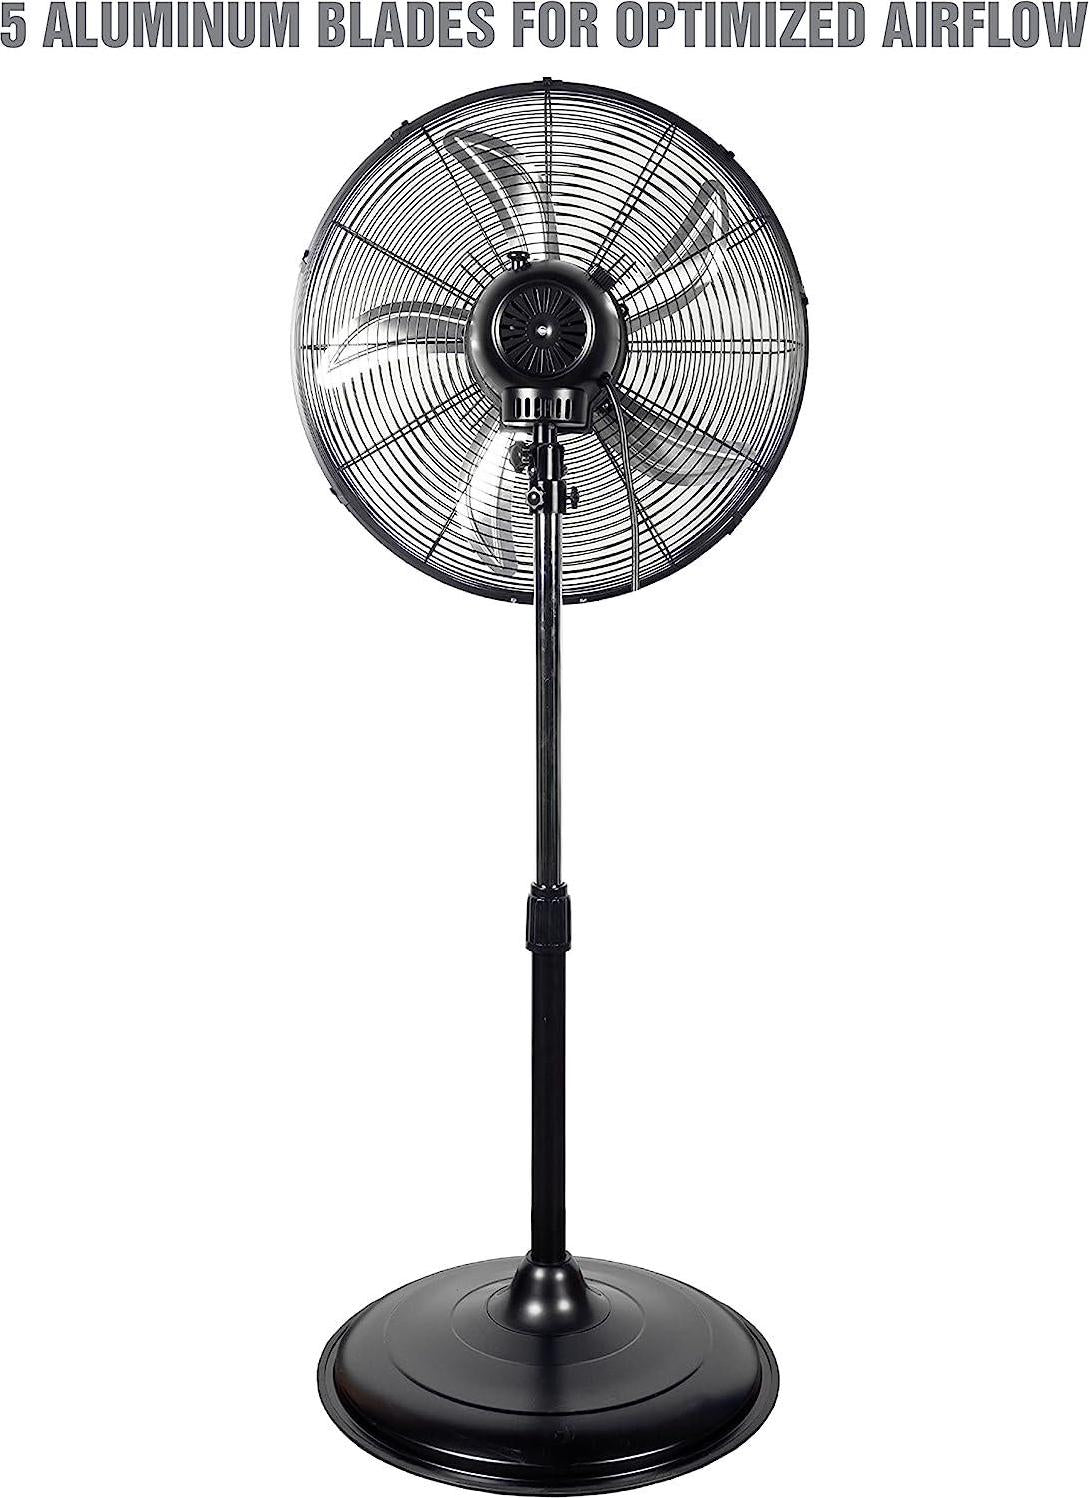 OEM24871 20 Oscillating Pedestal Fan, Commercial Fan For Worksites, Industrial Fans, High Velocity Shop Fan, 20 Inch